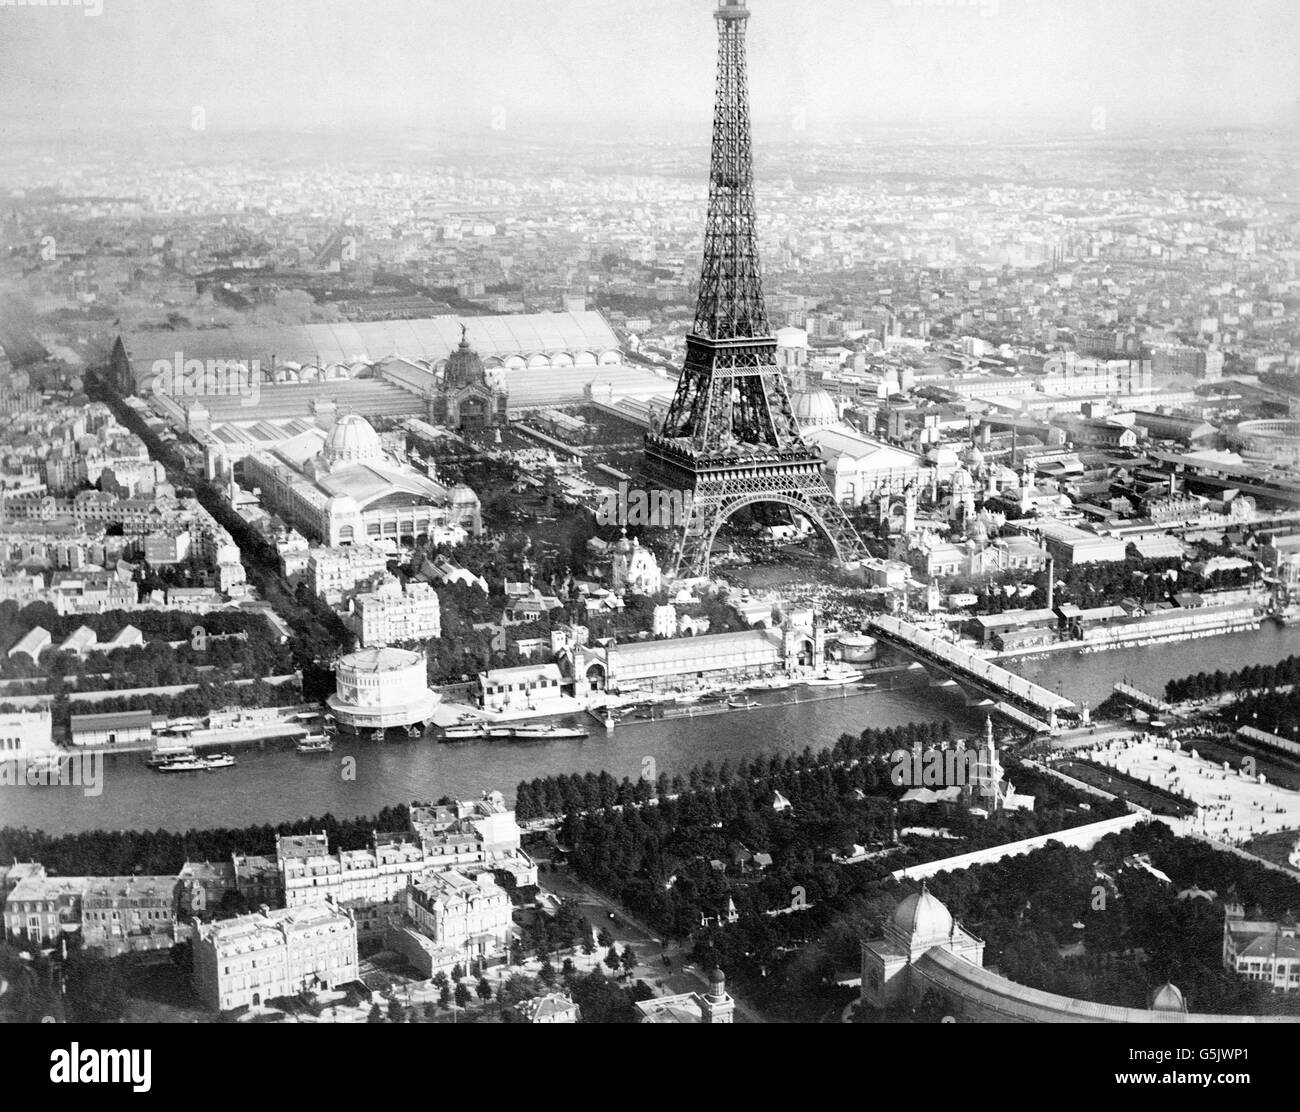 Esposizione di Parigi 1889. Vista aerea di Parigi, Francia, da un palloncino, mostrando la Senna, la Torre Eiffel e gli edifici dell'Exposition Universelle di 1889. Foto di Alphonse Liébert, 1889. Foto Stock